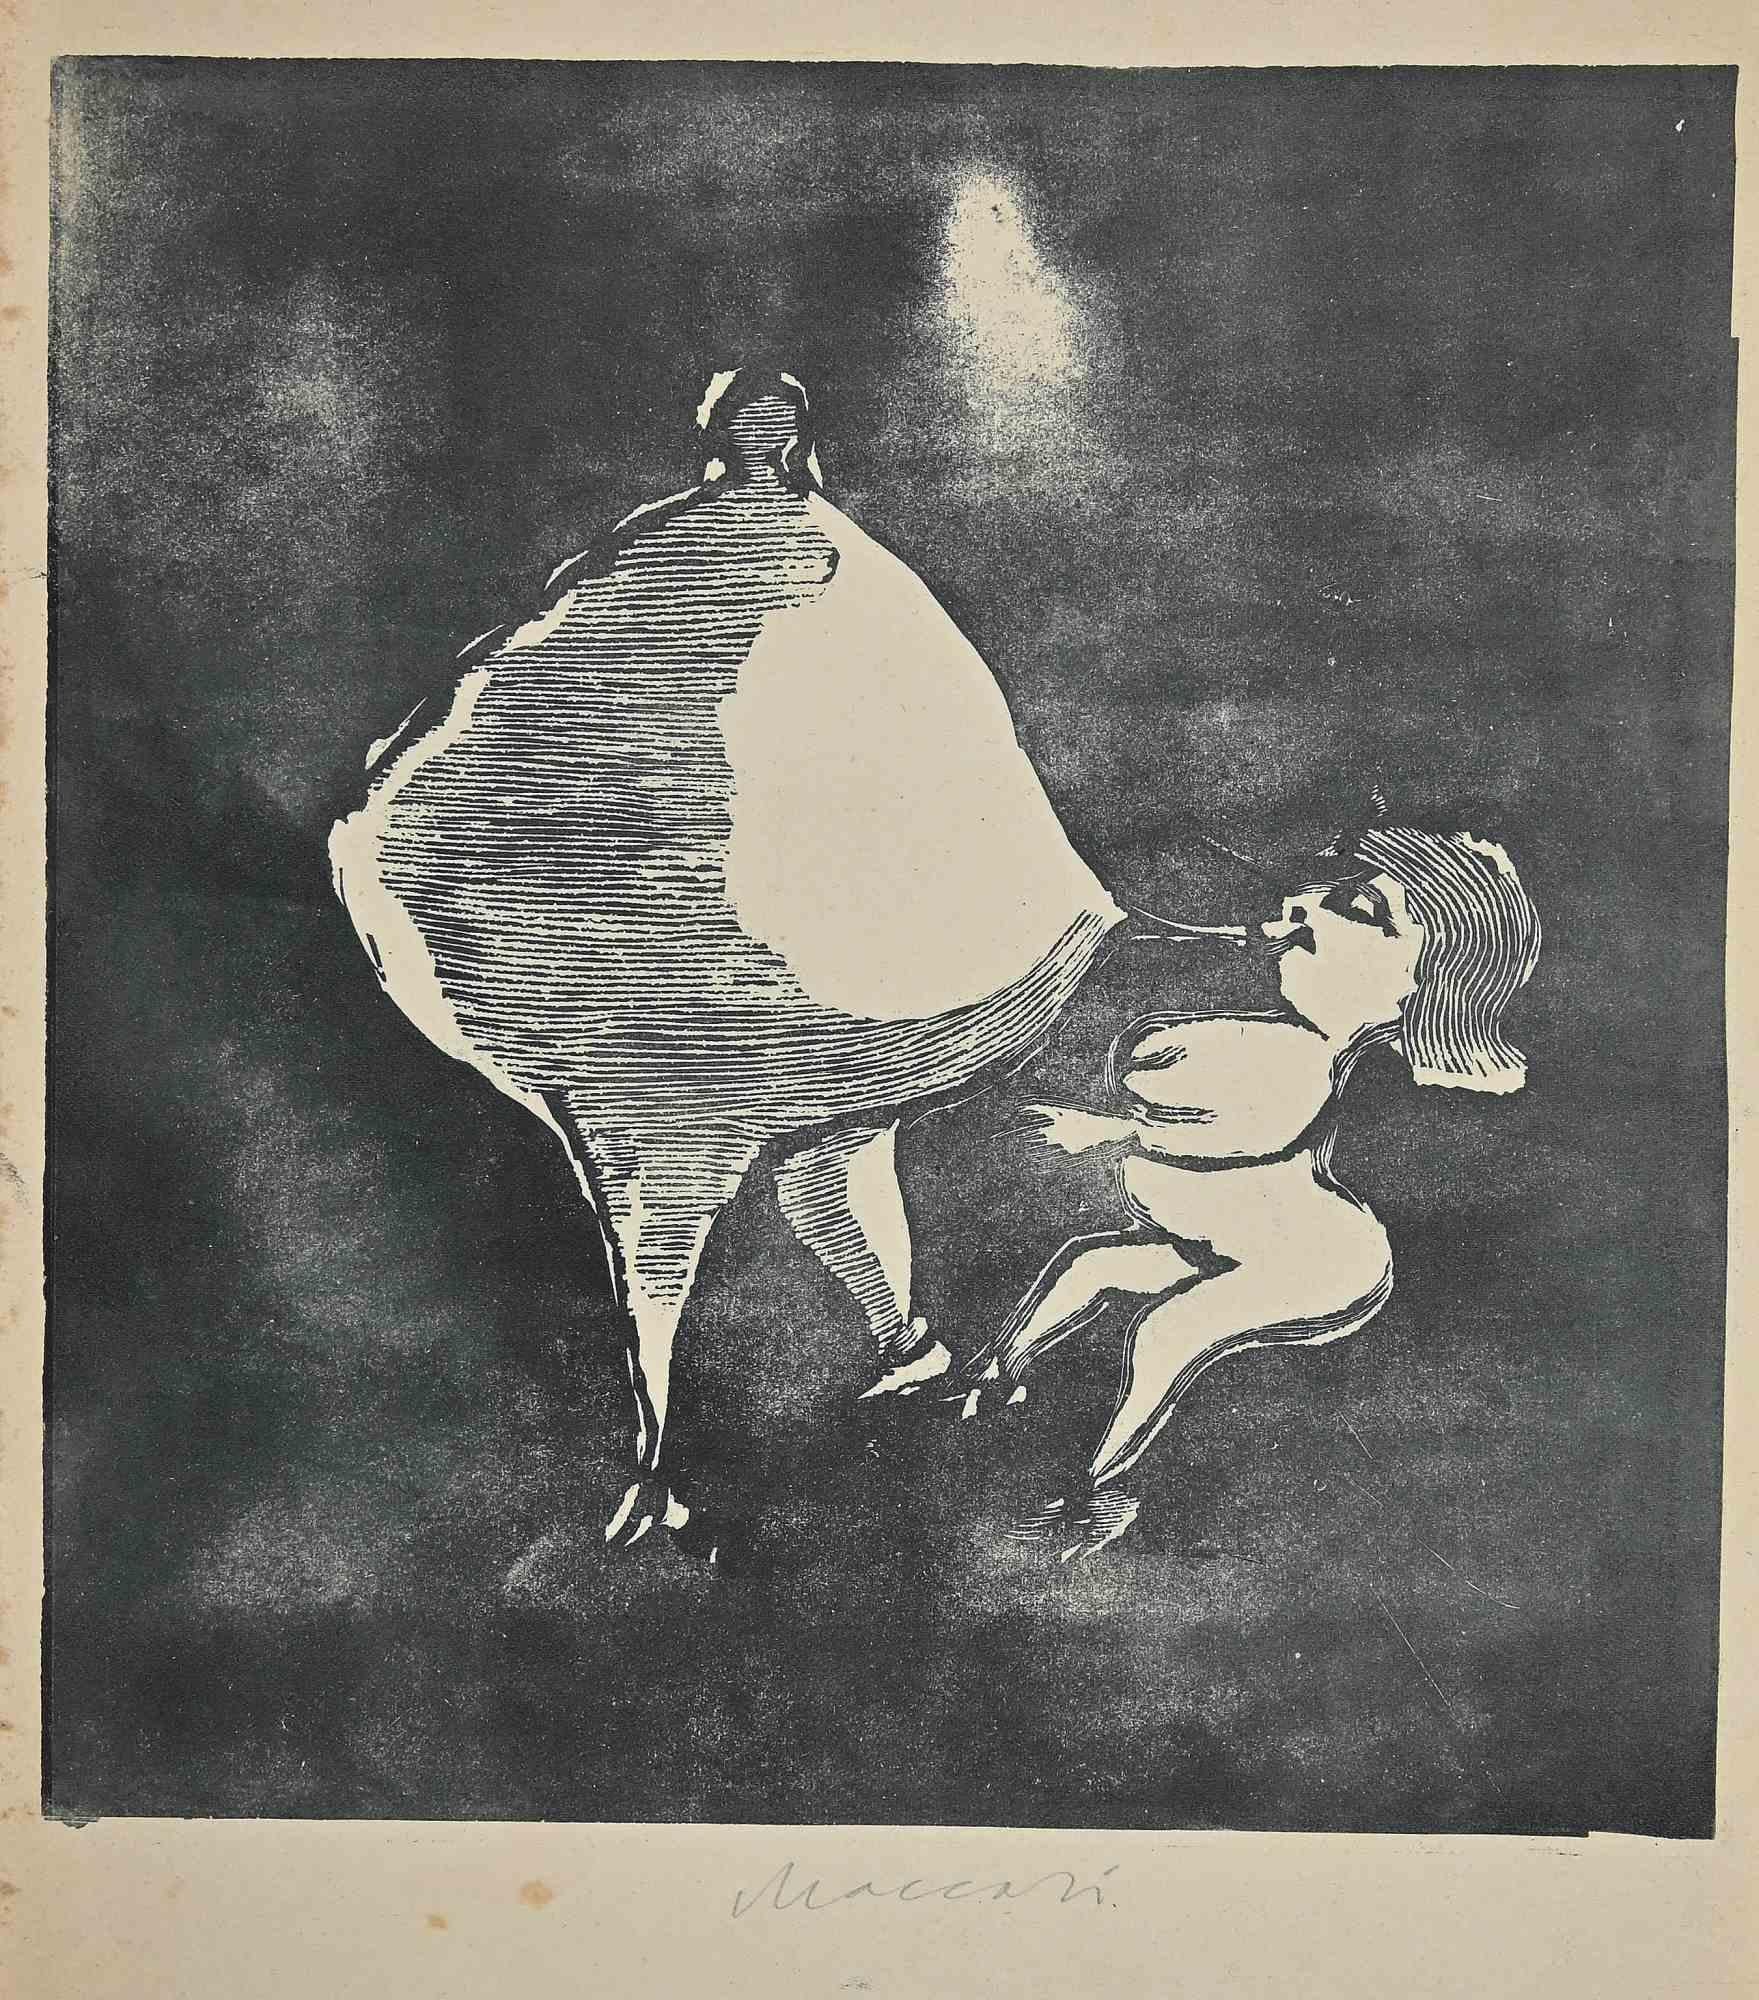 Human Shapes est une œuvre d'art réalisée par Mino Maccari (1924-1989) au milieu du 20e siècle.

Linogravure sur papier. Signé à la main en bas.

Bon état avec de légères rousseurs.

Mino Maccari (Sienne, 1924-Rome, 16 juin 1989) est un écrivain,